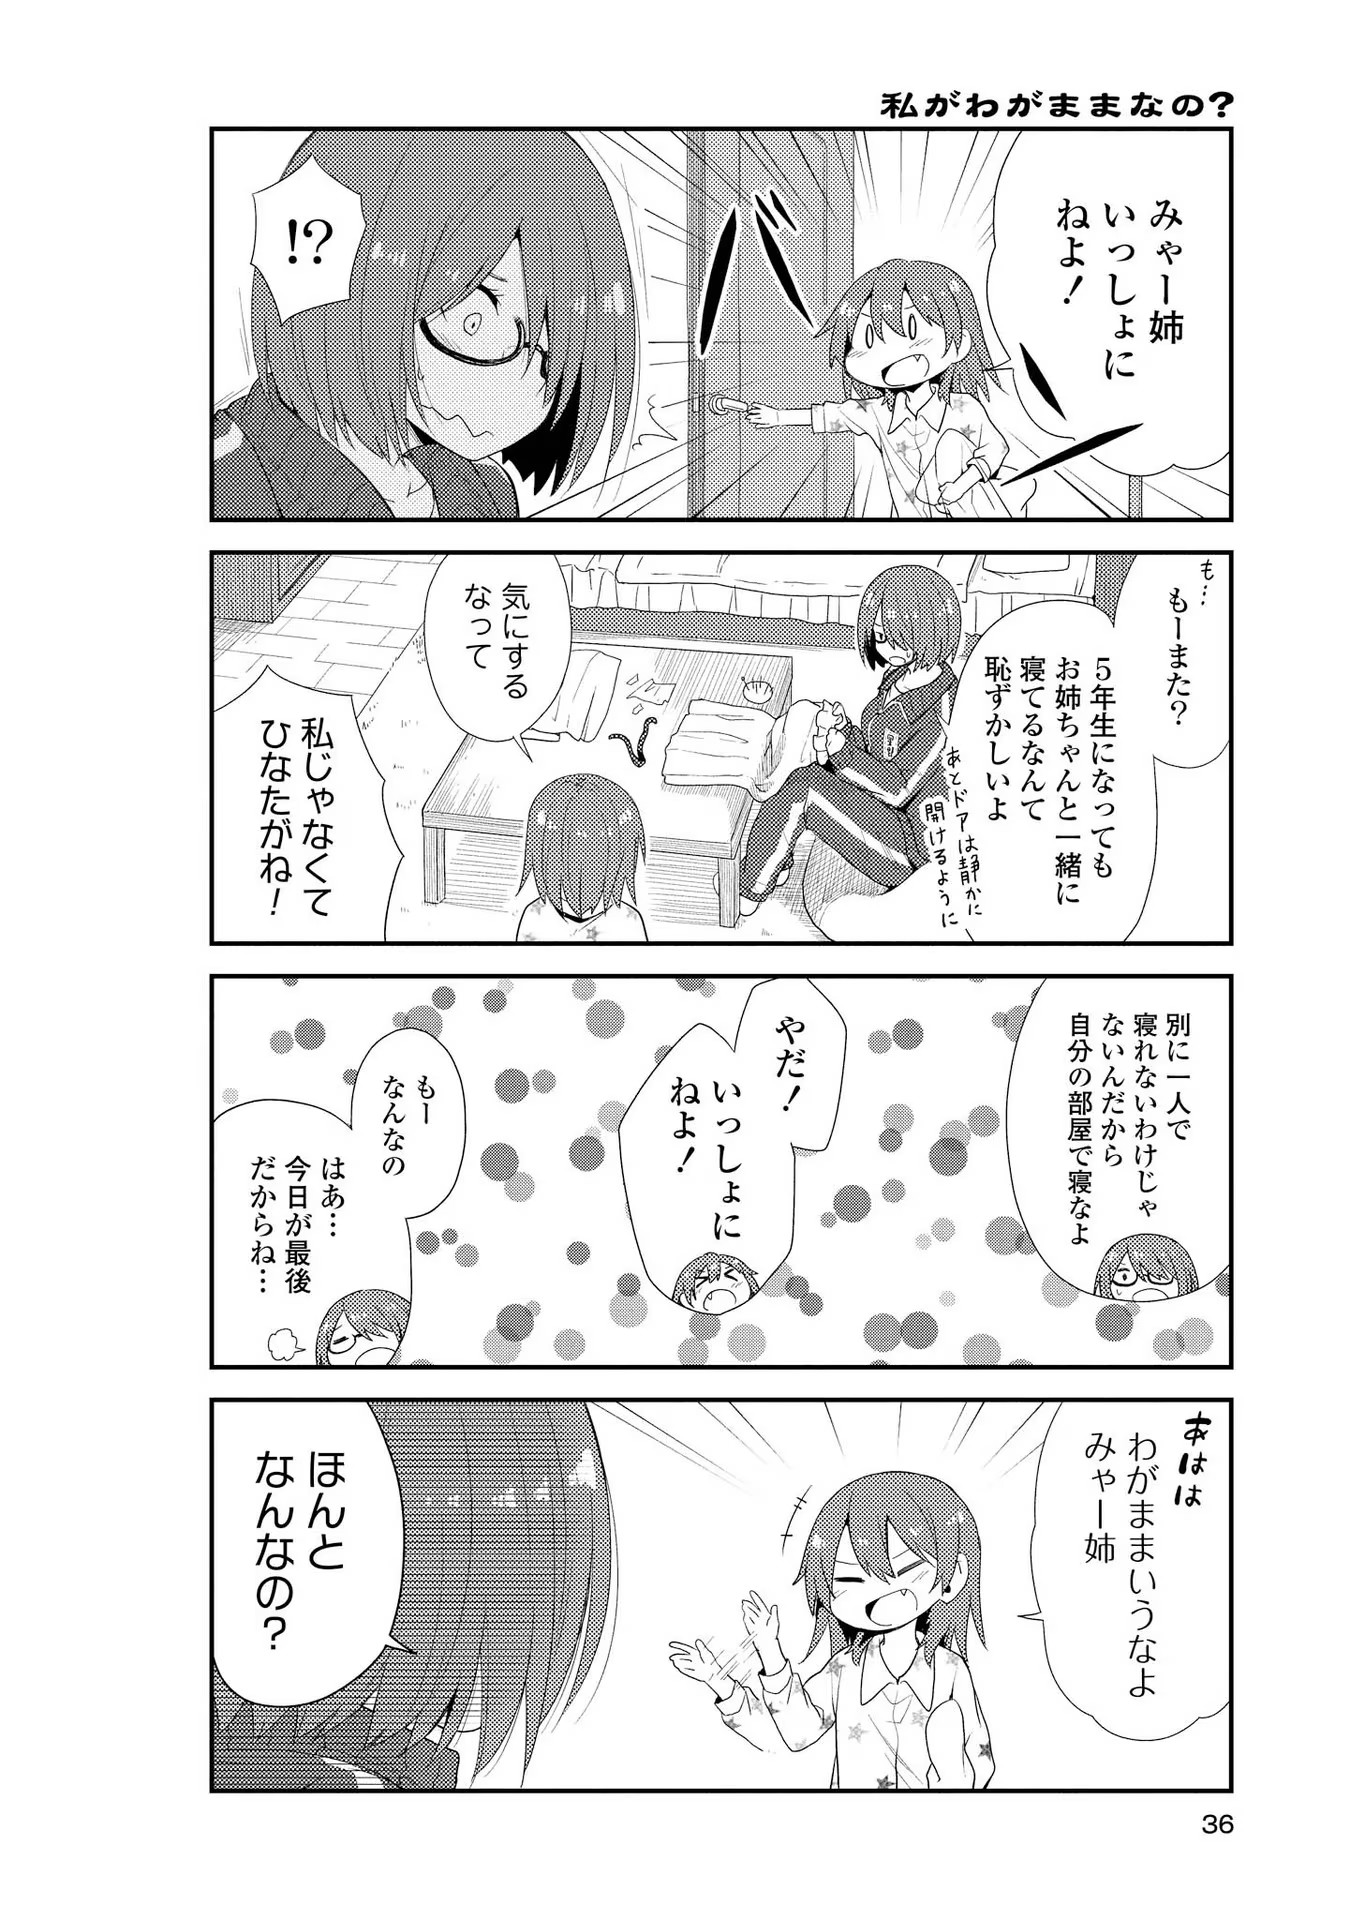 Watashi ni Tenshi ga Maiorita! - Chapter 2.5 - Page 2